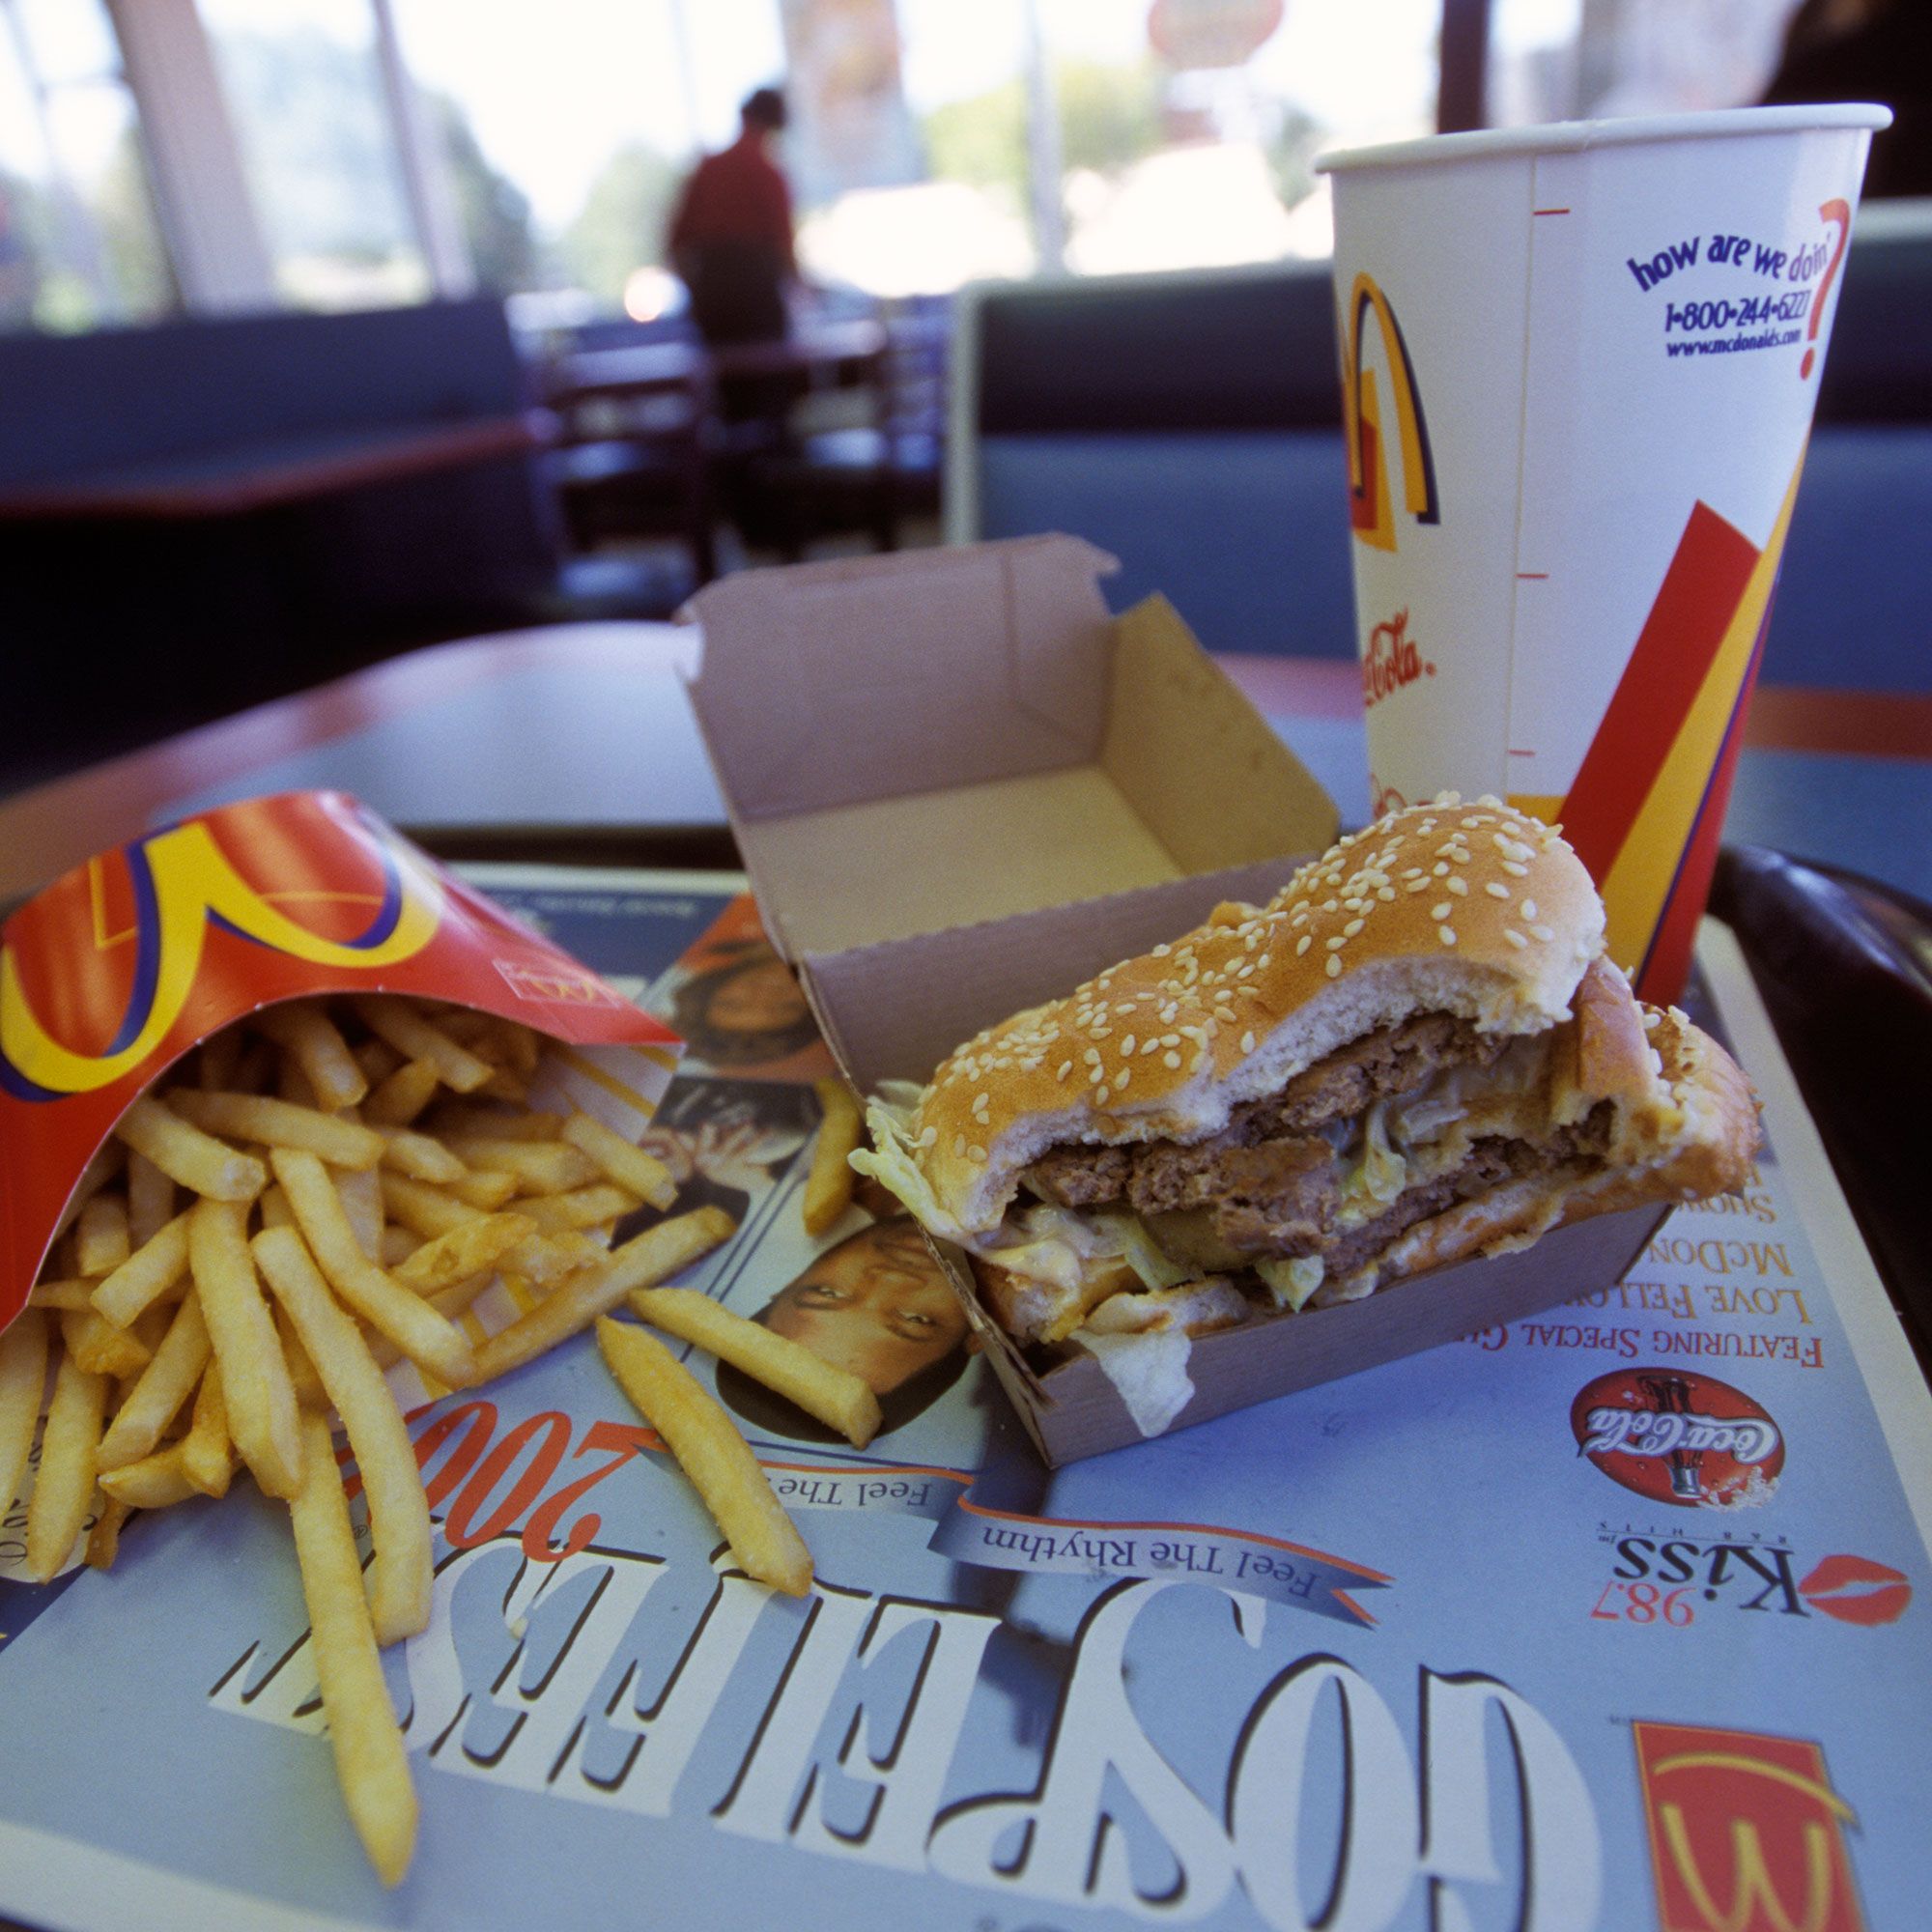 Cual es la hamburguesa de Mcdonalds con menos calorías